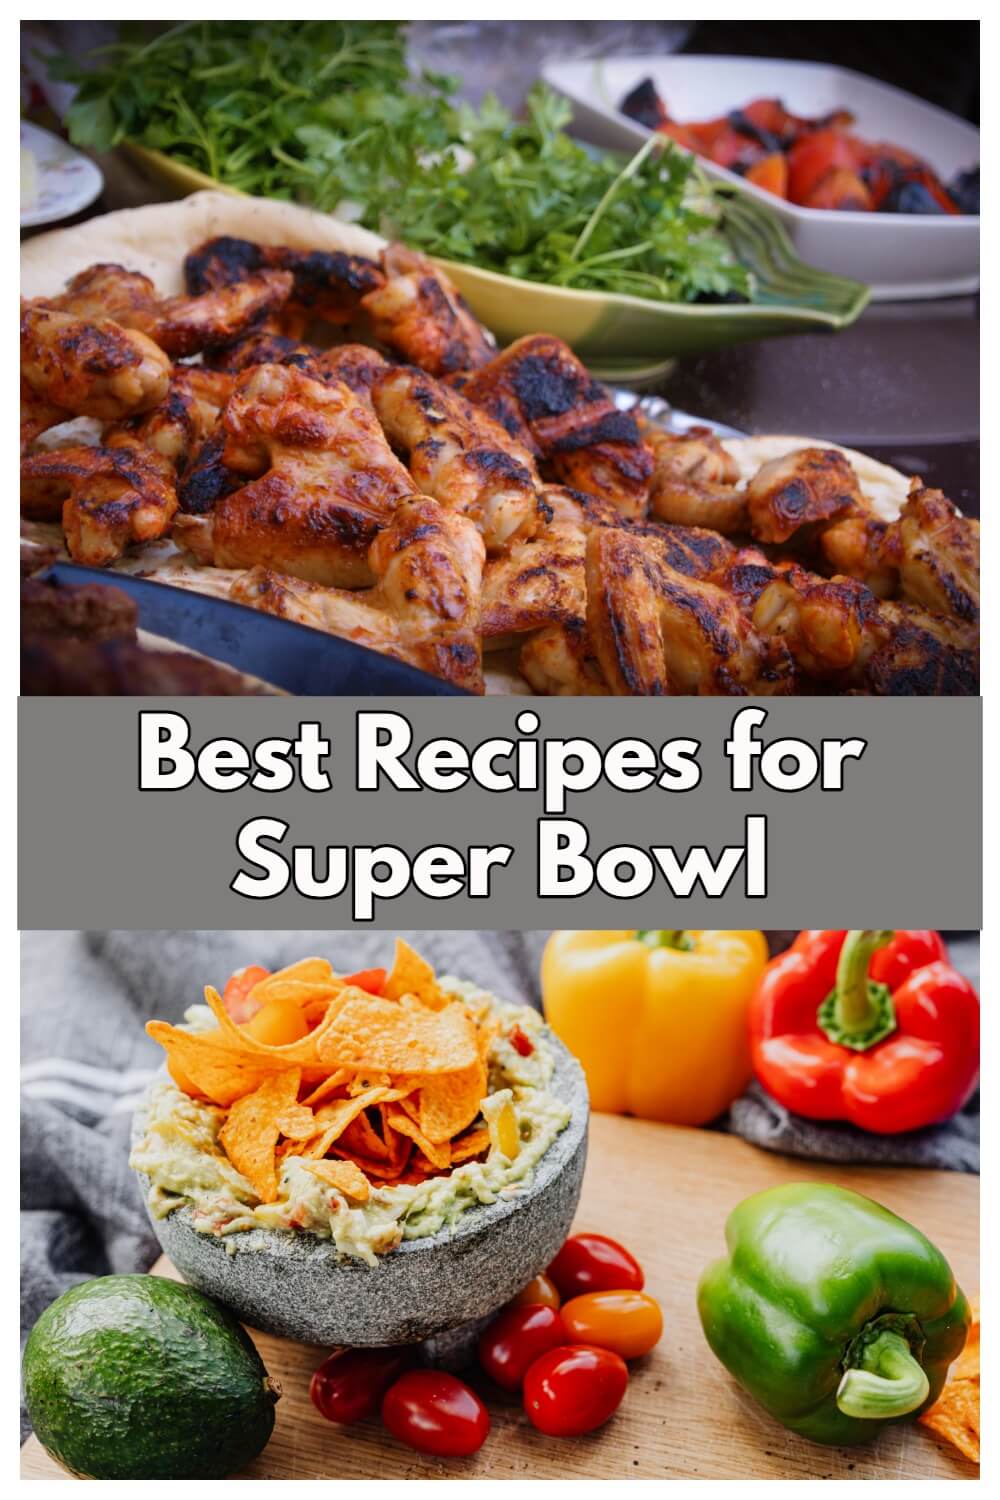 25+ Best Super Bowl Recipes